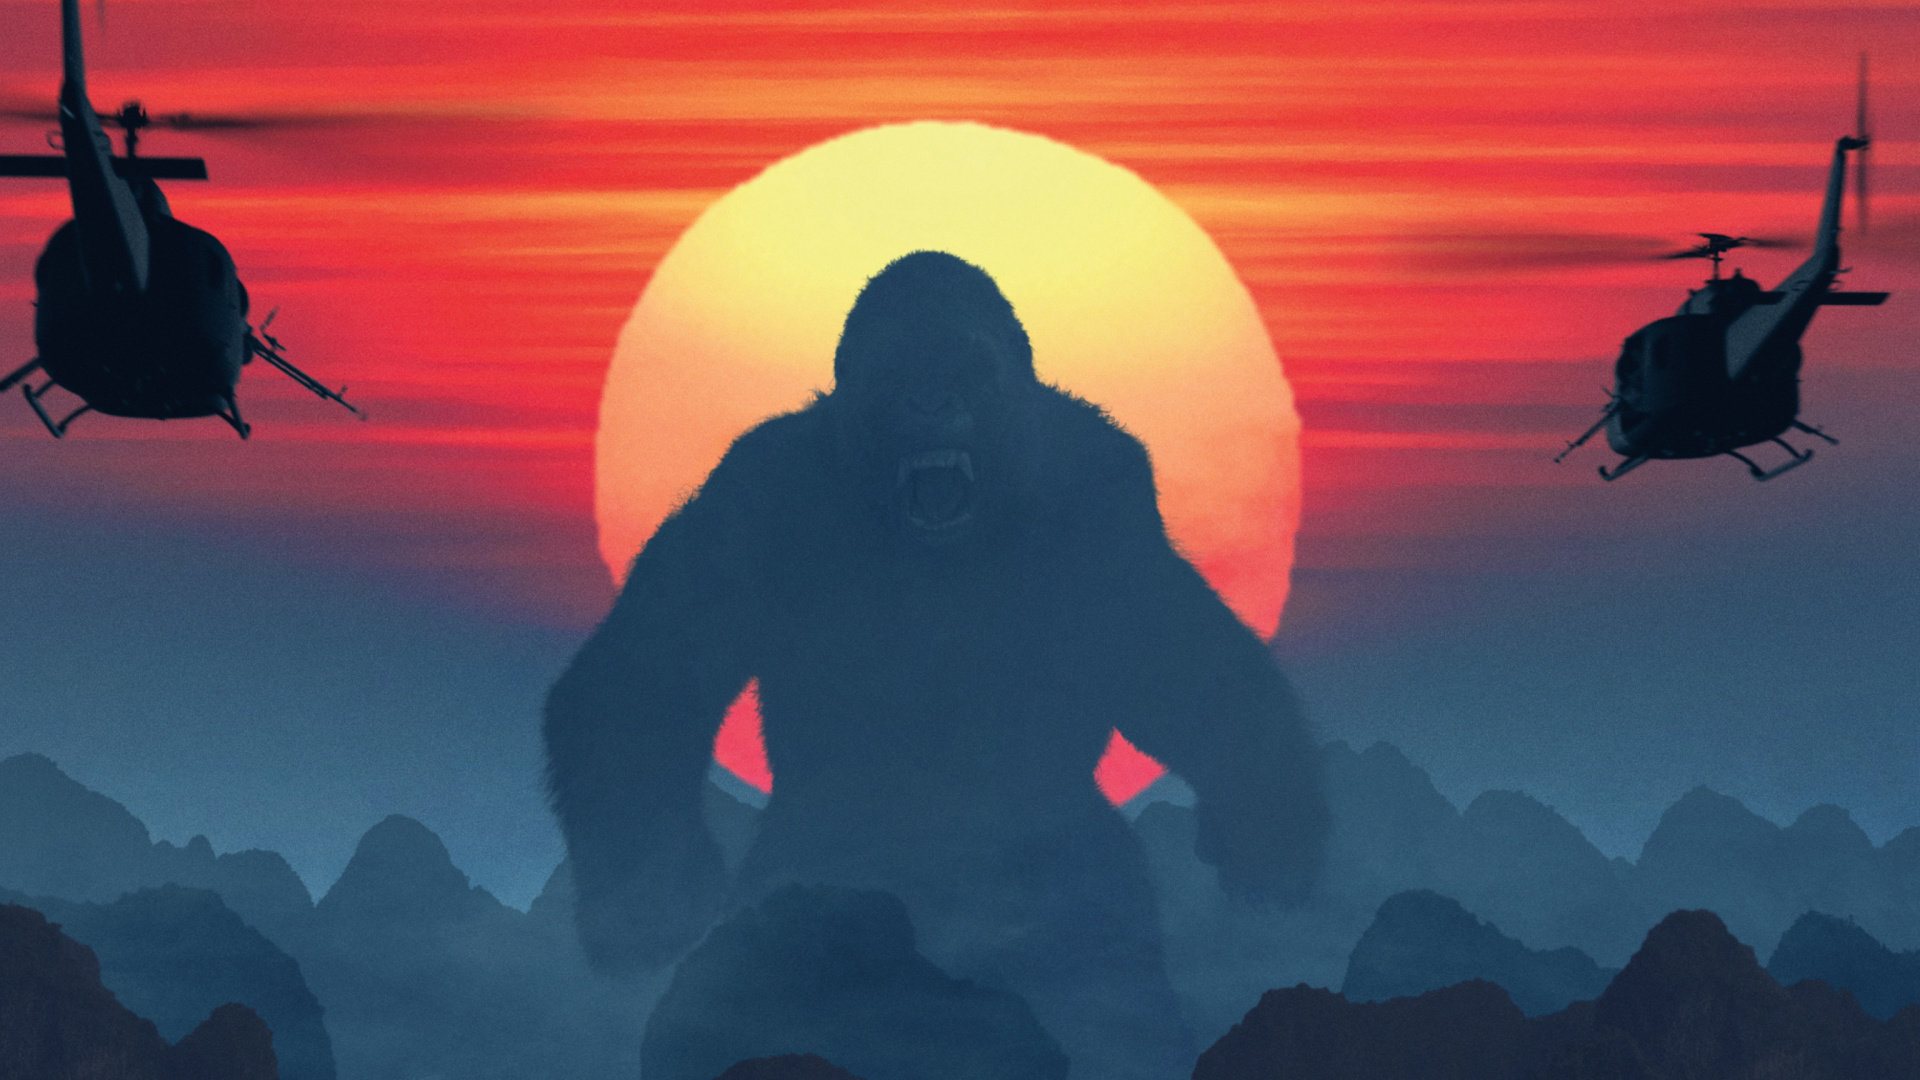 Обои King Kong 2017 1920x1080